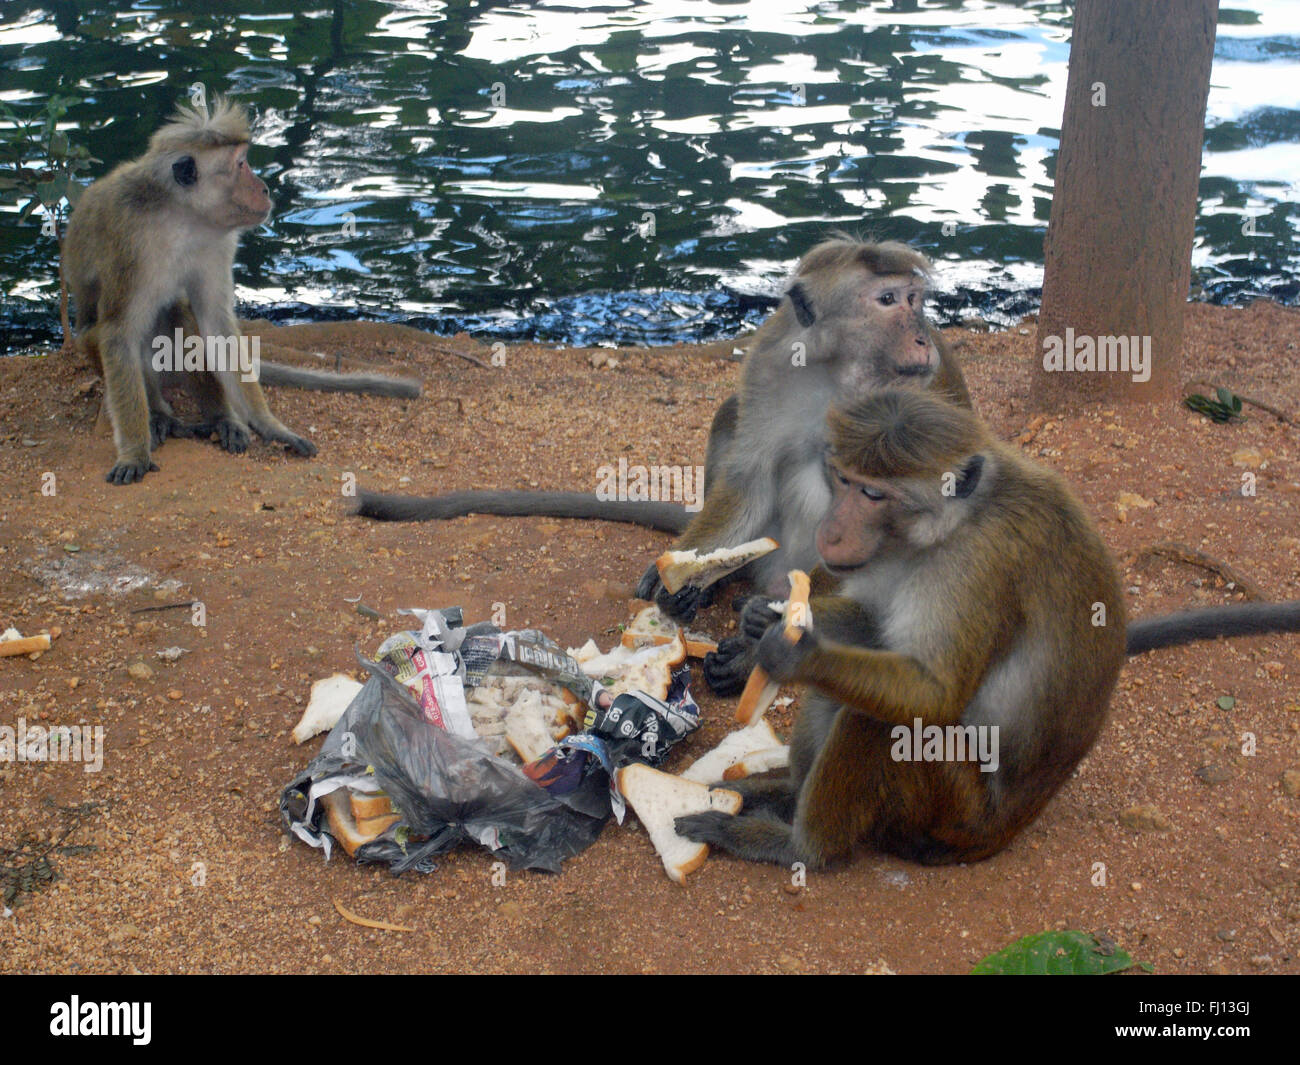 Toque macaque (Macaca sinica) ont volé et mangé des sandwiches de quelqu'un, le lac de Kandy, Kandy, Sri Lanka Banque D'Images